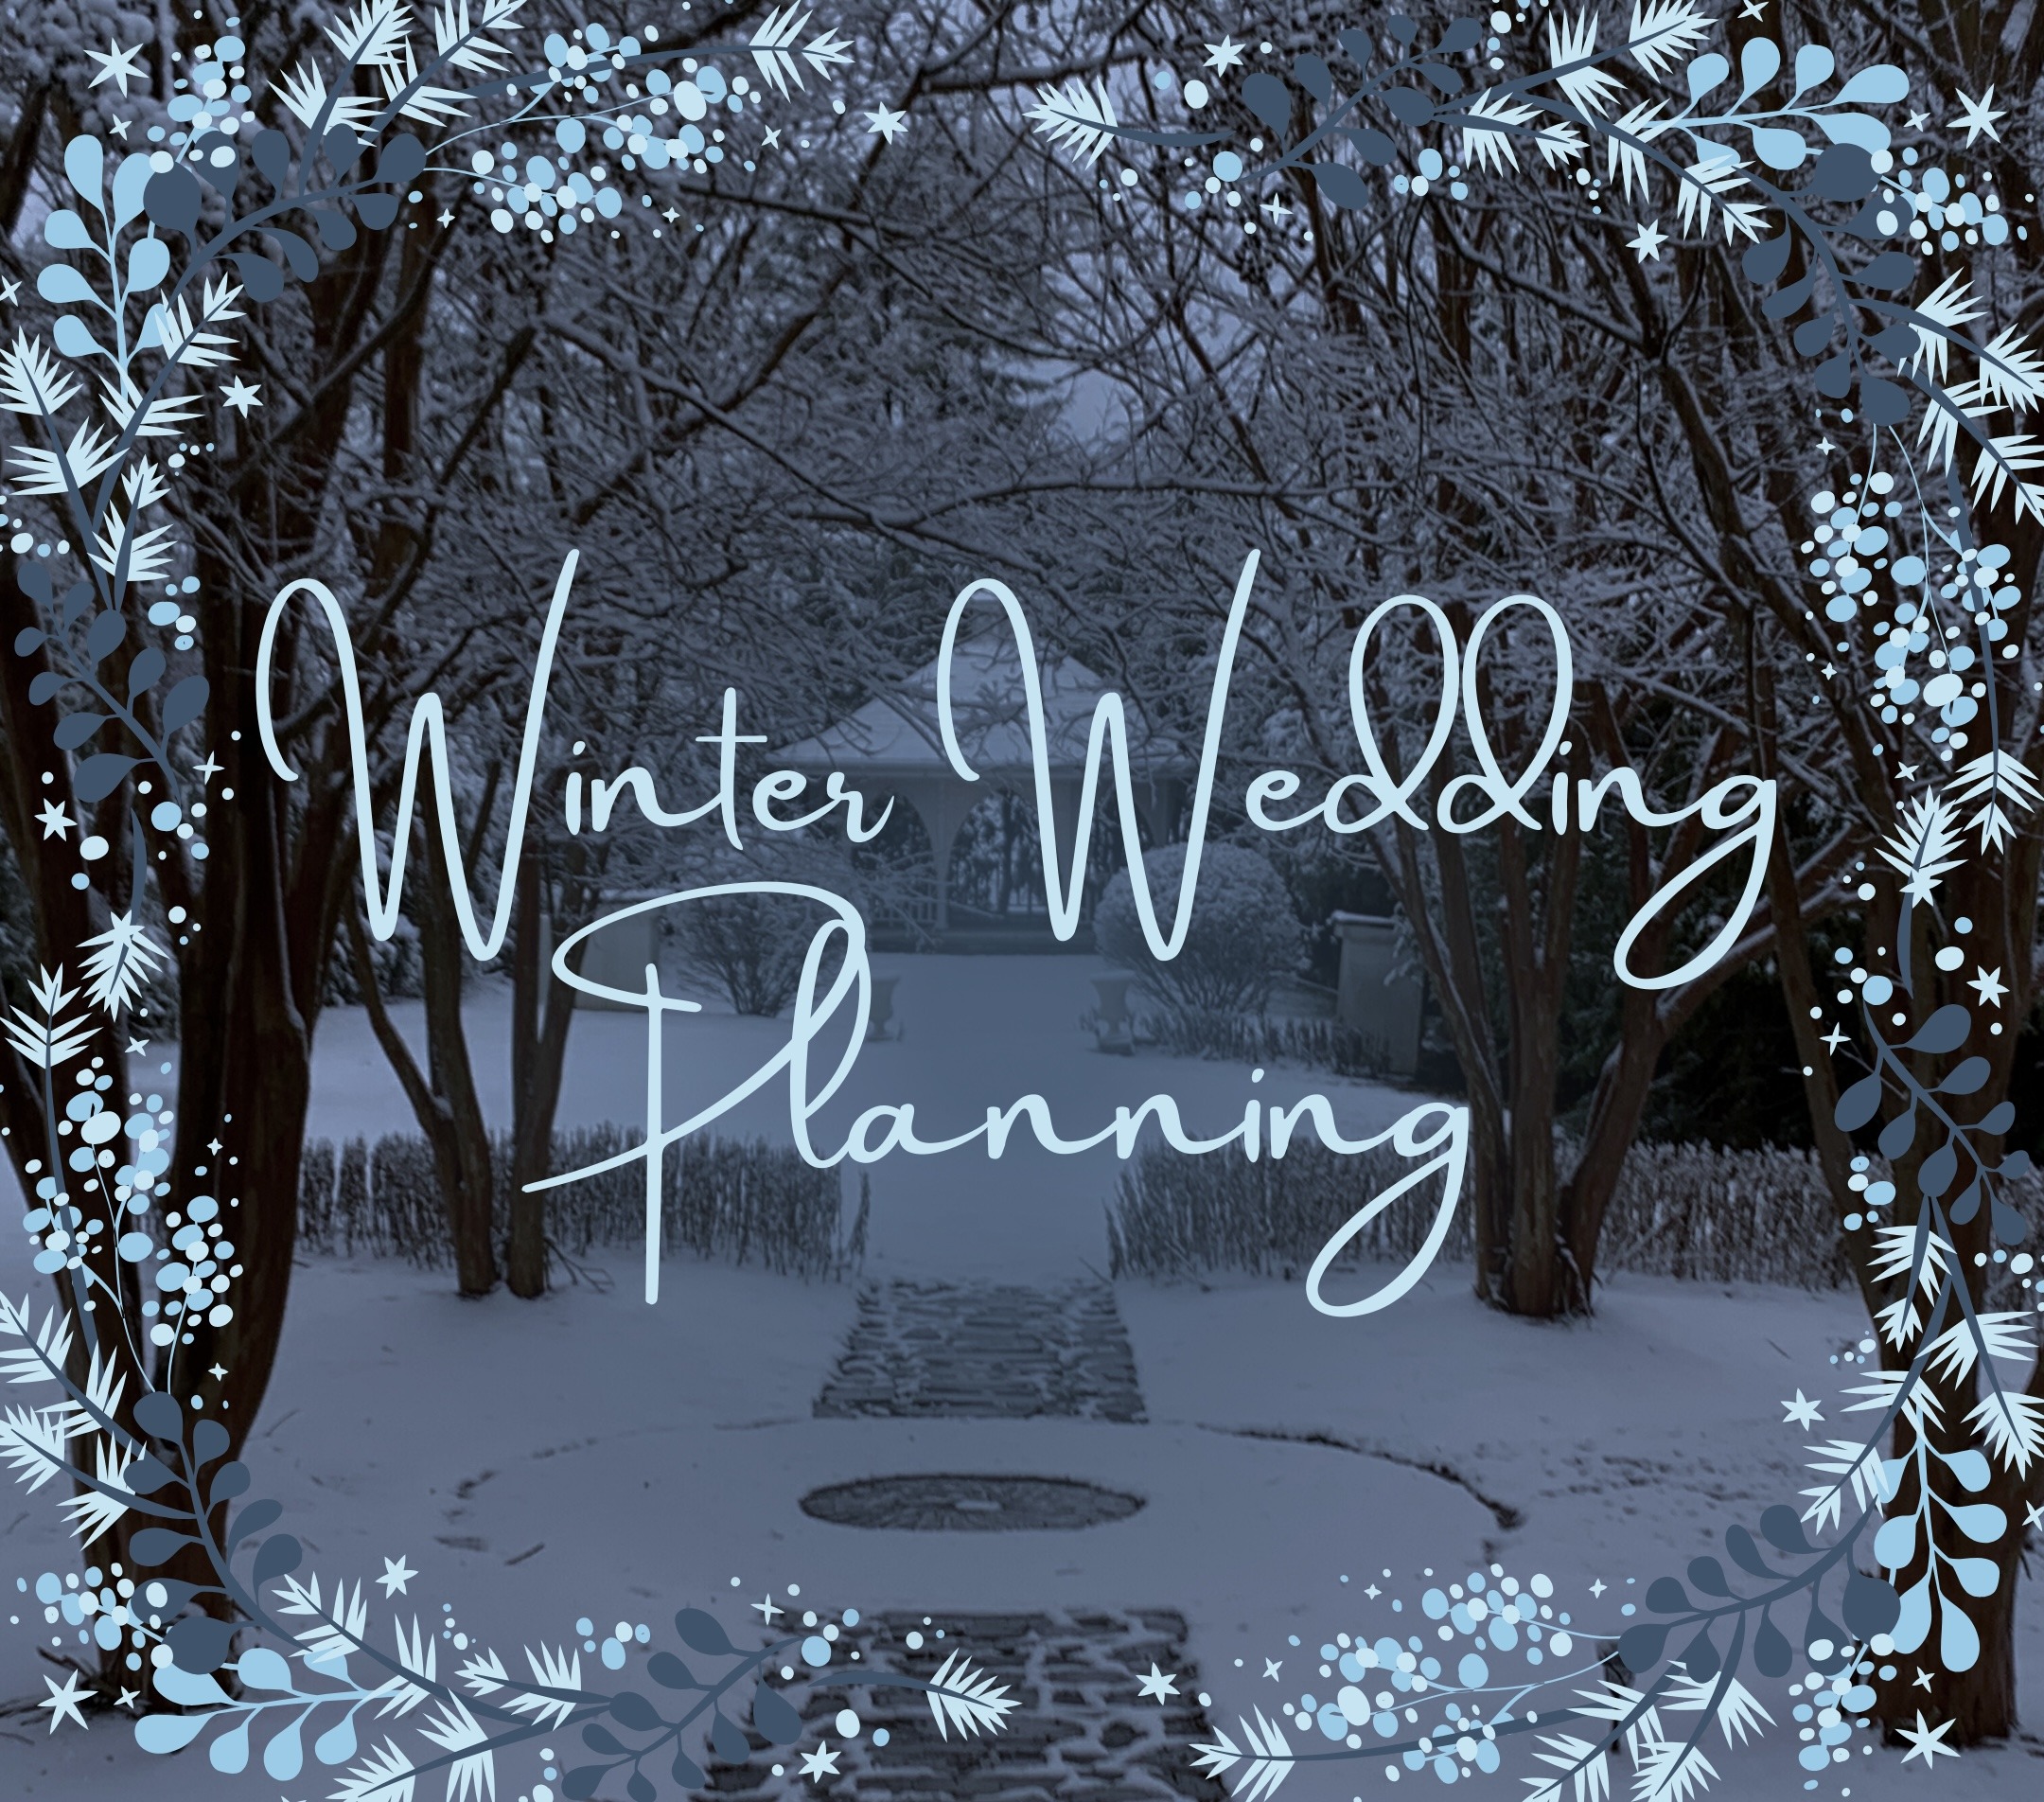 Nesselrod winter Wedding Planning